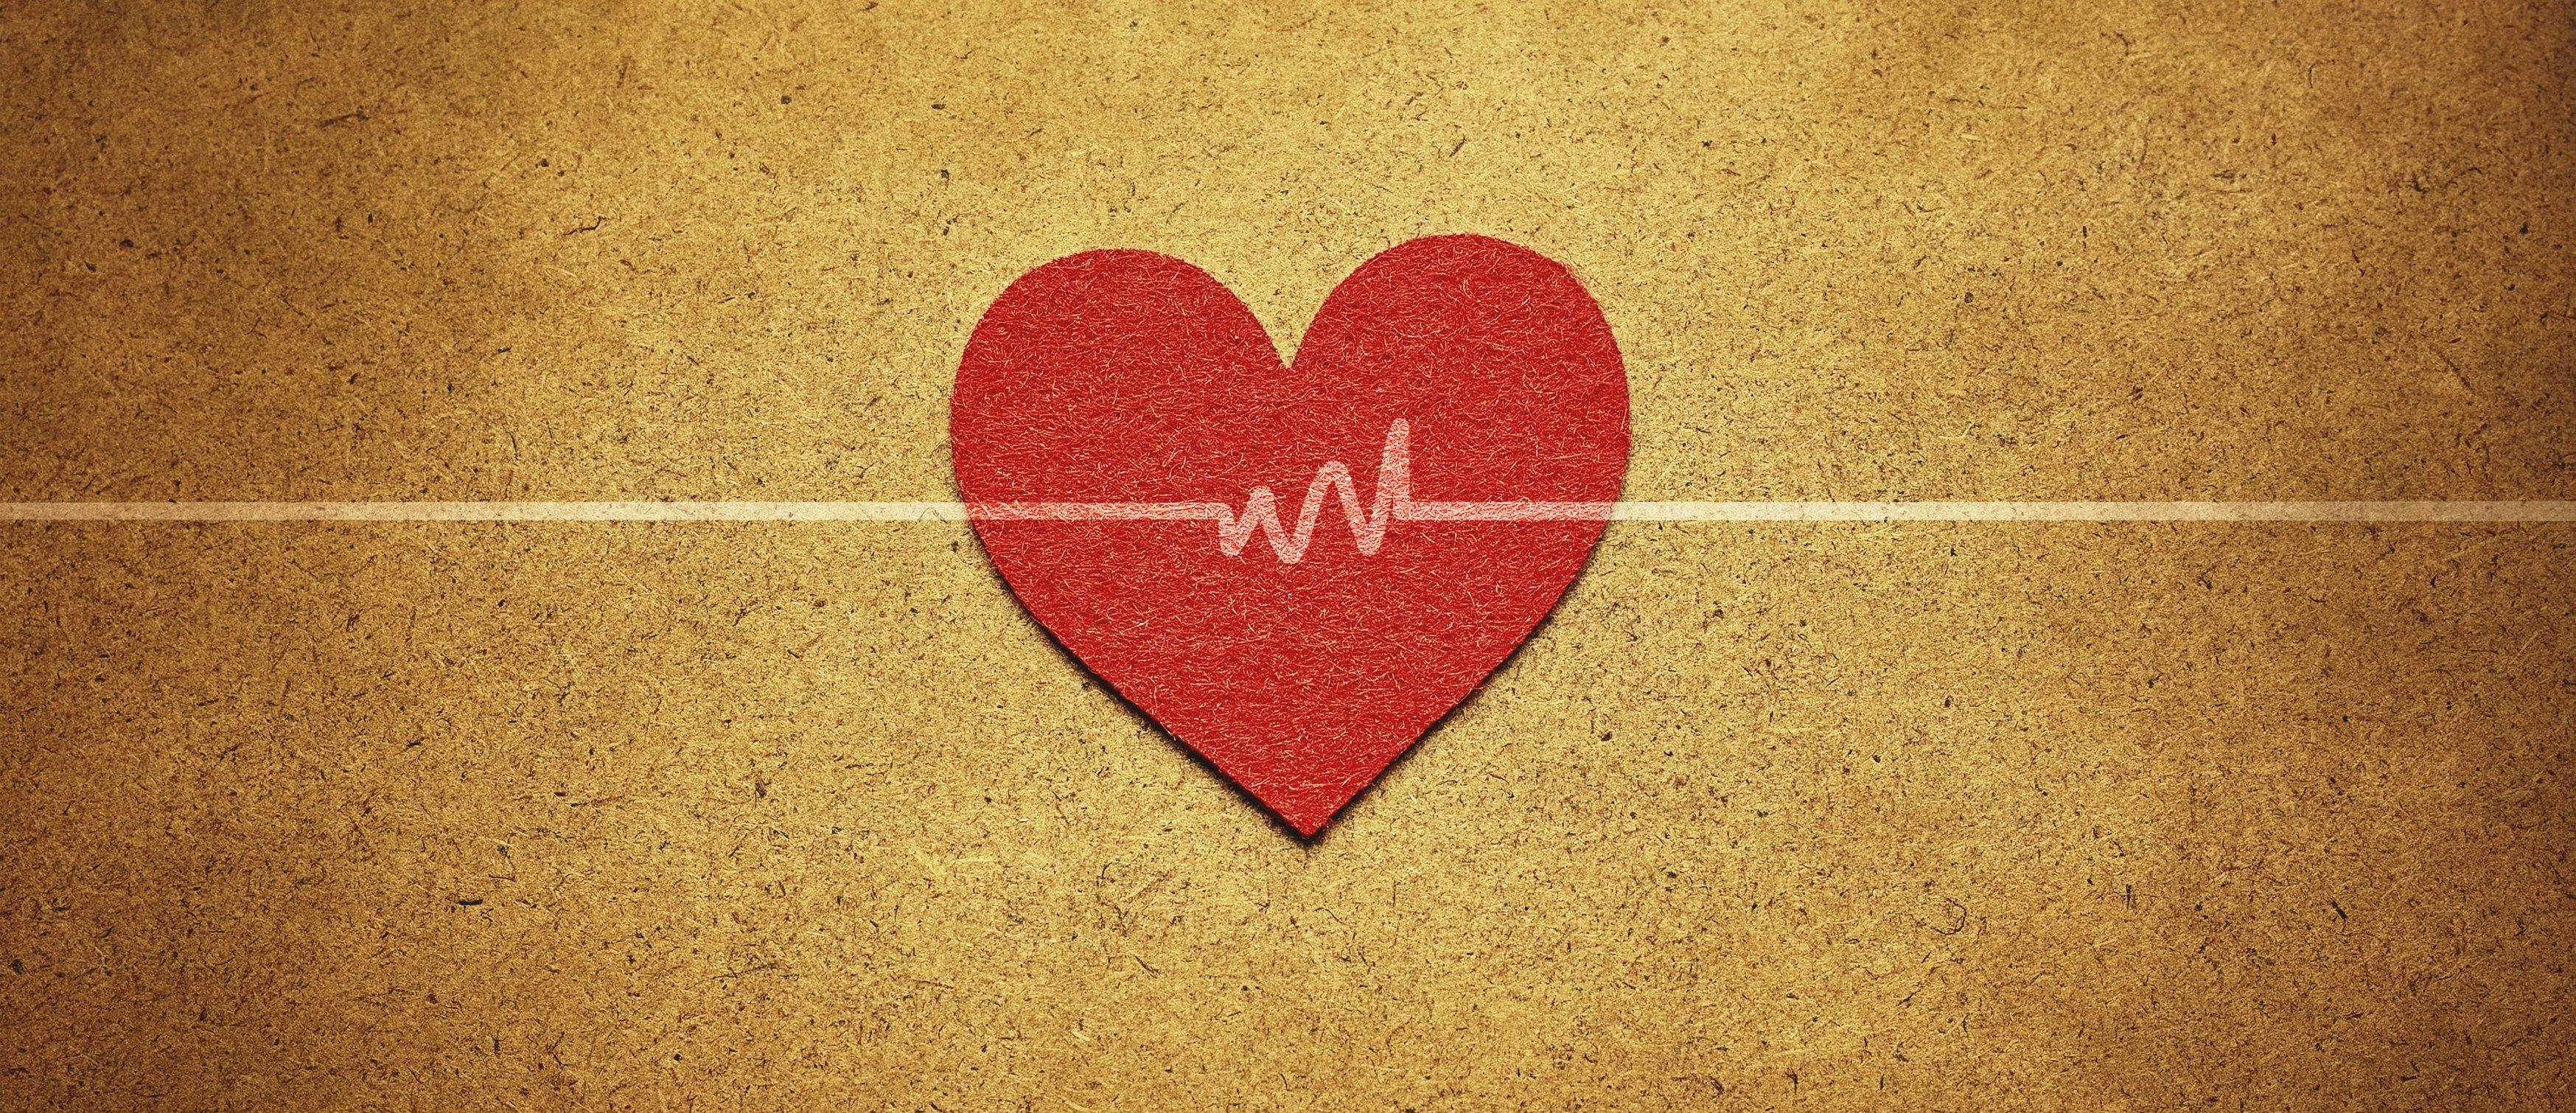 FDA Expands Artificial Heart Valve Use